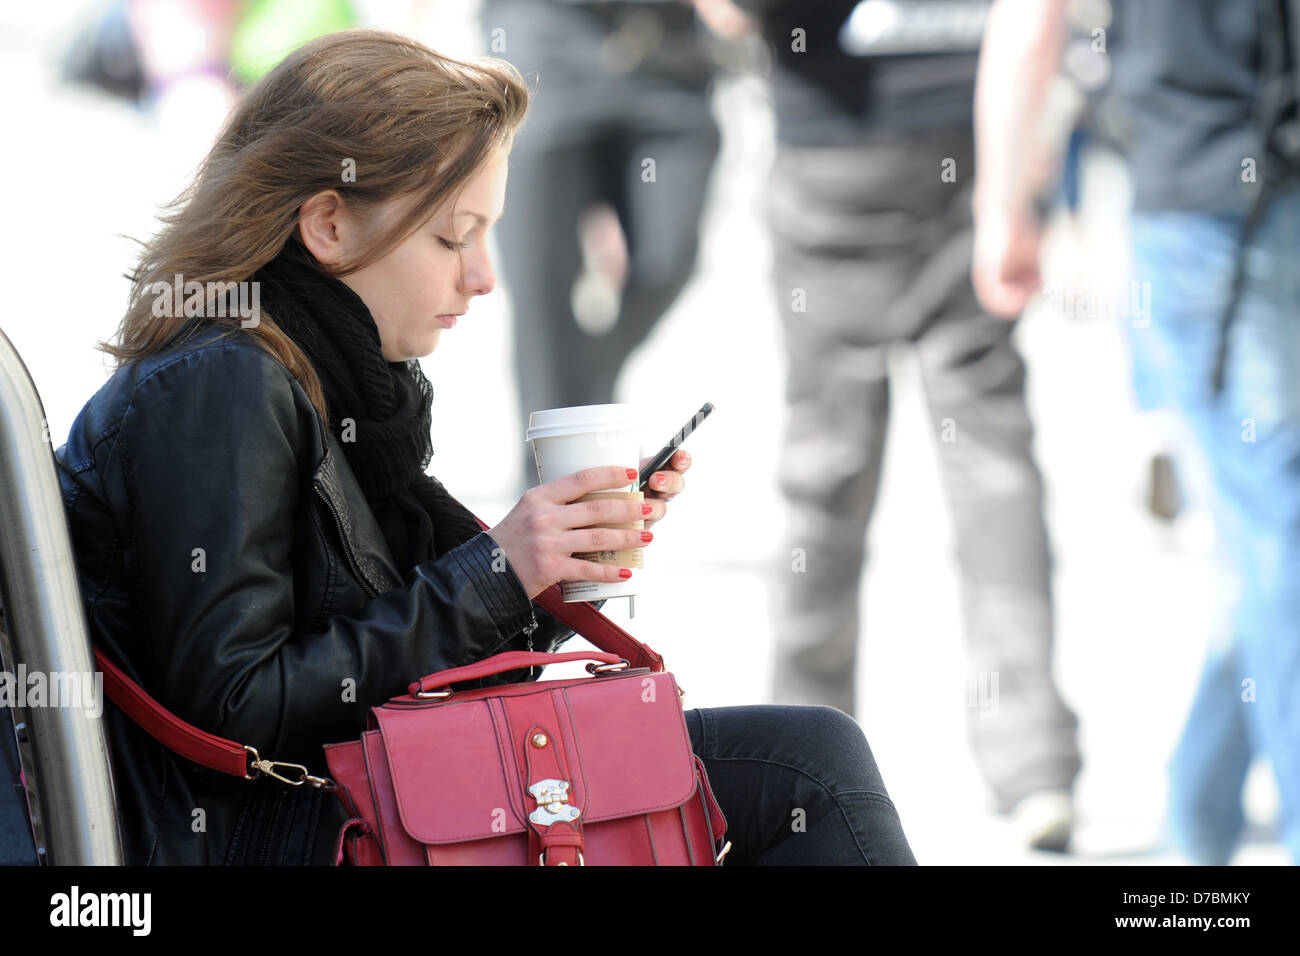 Una ragazza si siede su un banco con un caffè in mano mentre si utilizza un telefono. Foto Stock